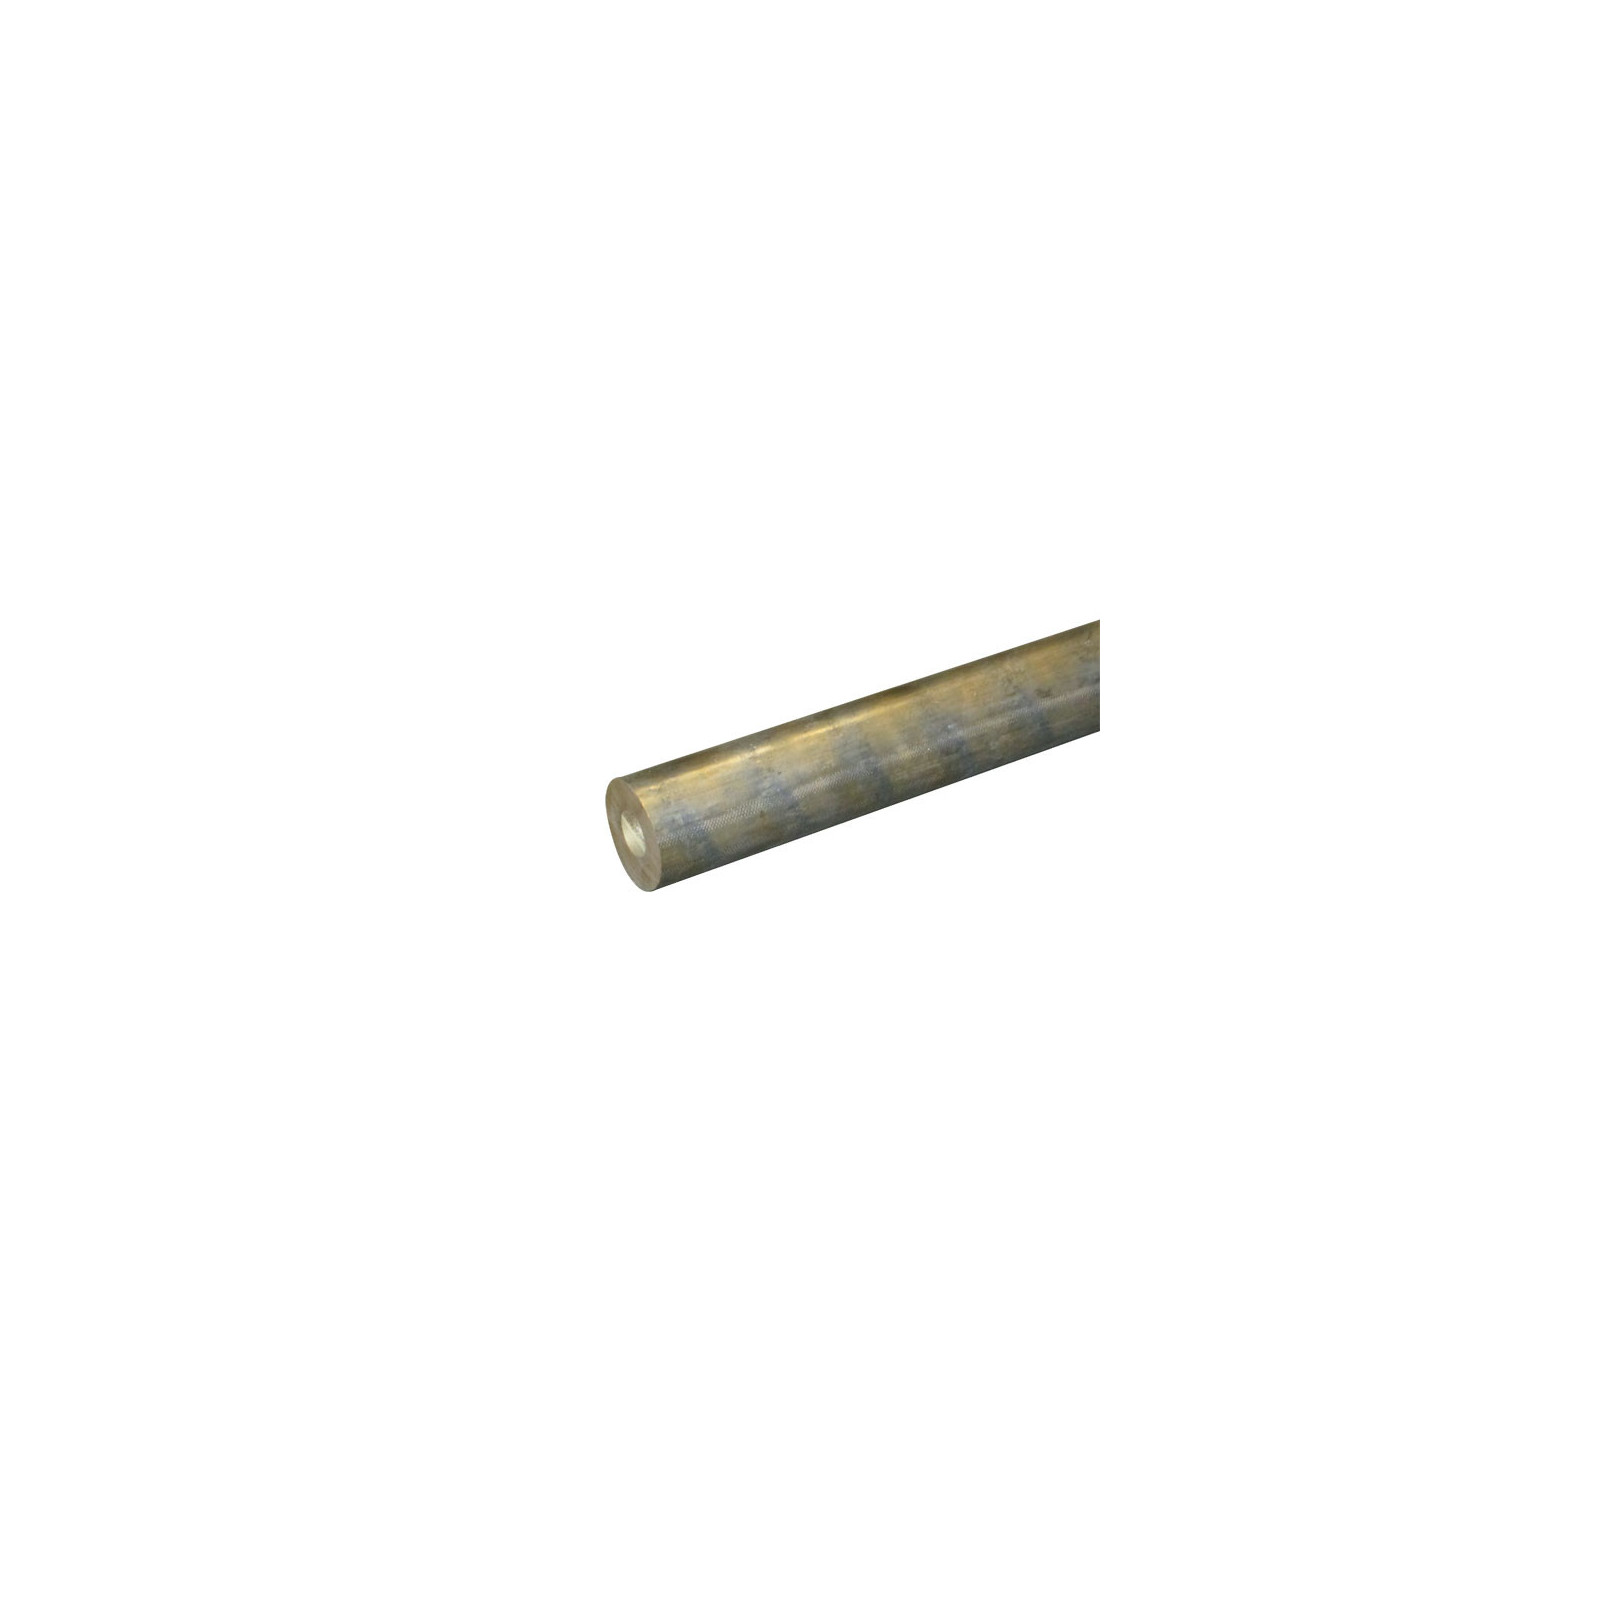 Bronze qualité UE7 ébauche creuse longueur 500 mm Ø extérieur 41 x 24 mm